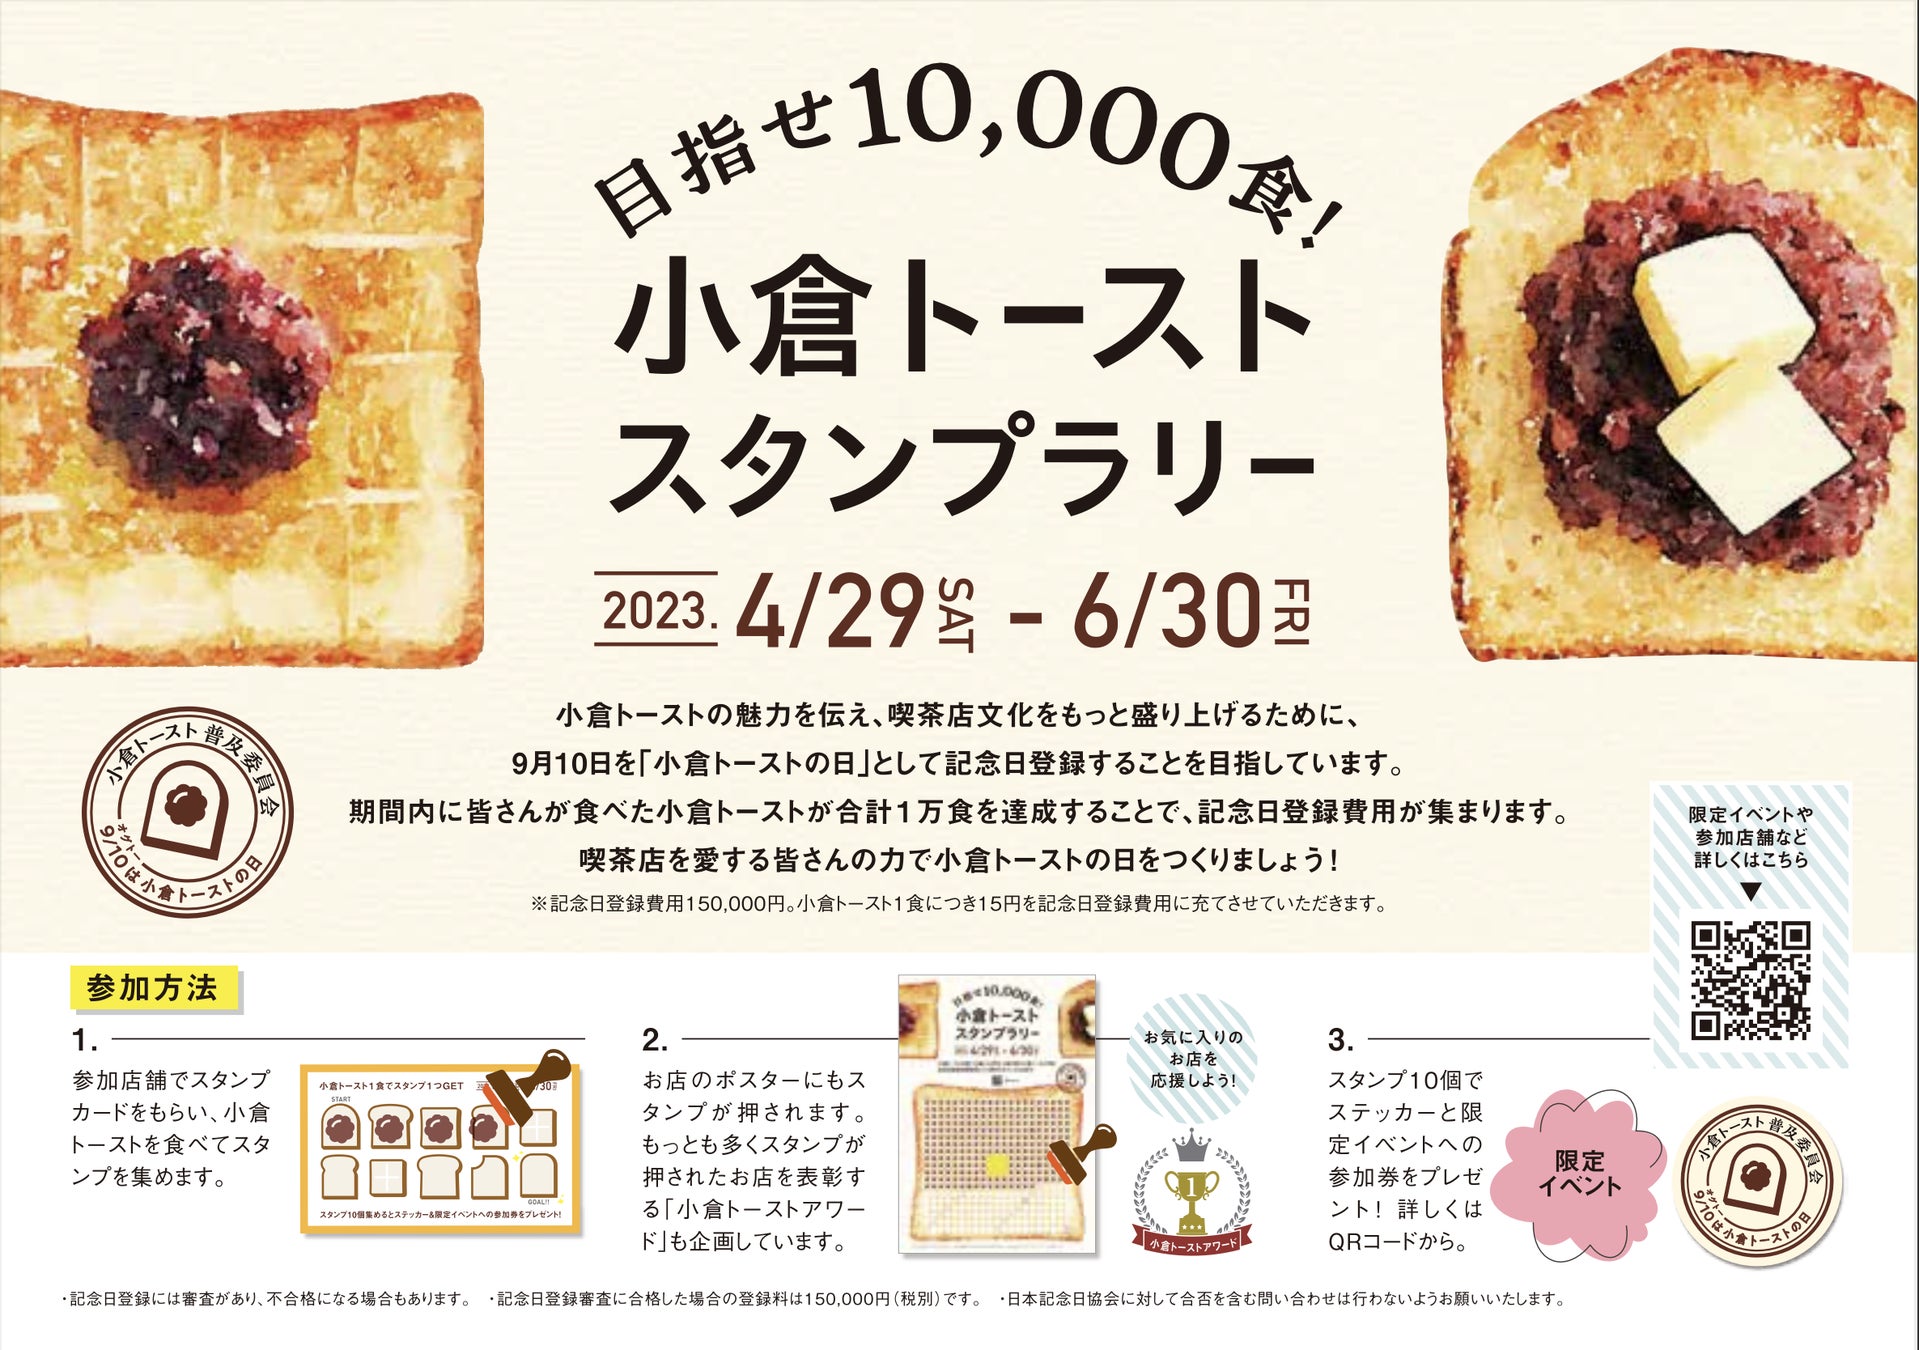 「小倉トーストの日」を記念しよう！東海地区の喫茶店やカフェが参加する小倉トーストスタンプラリーを開催！